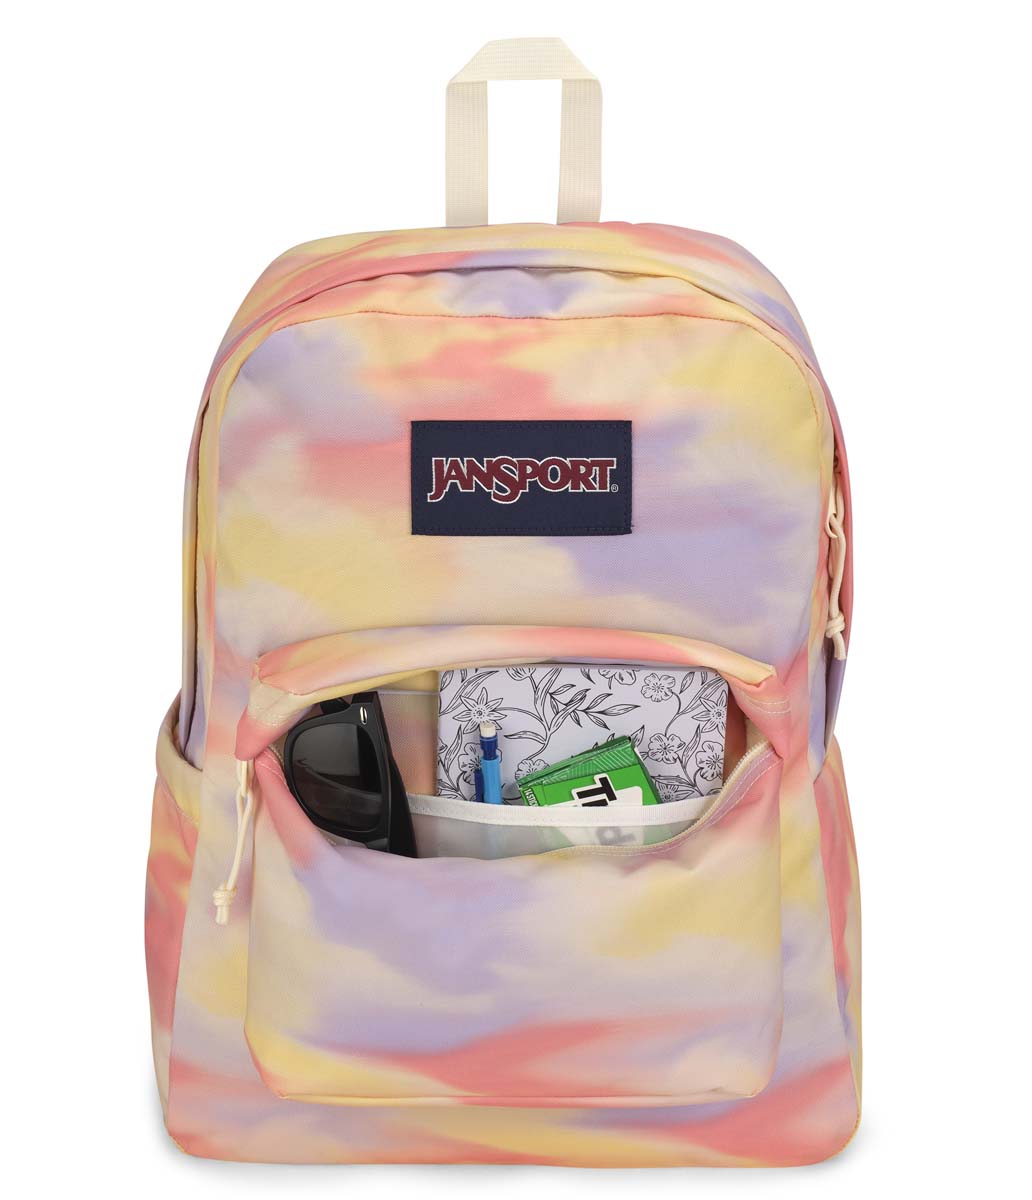 JanSport SuperBreak Plus Backpack - Blurred Wash